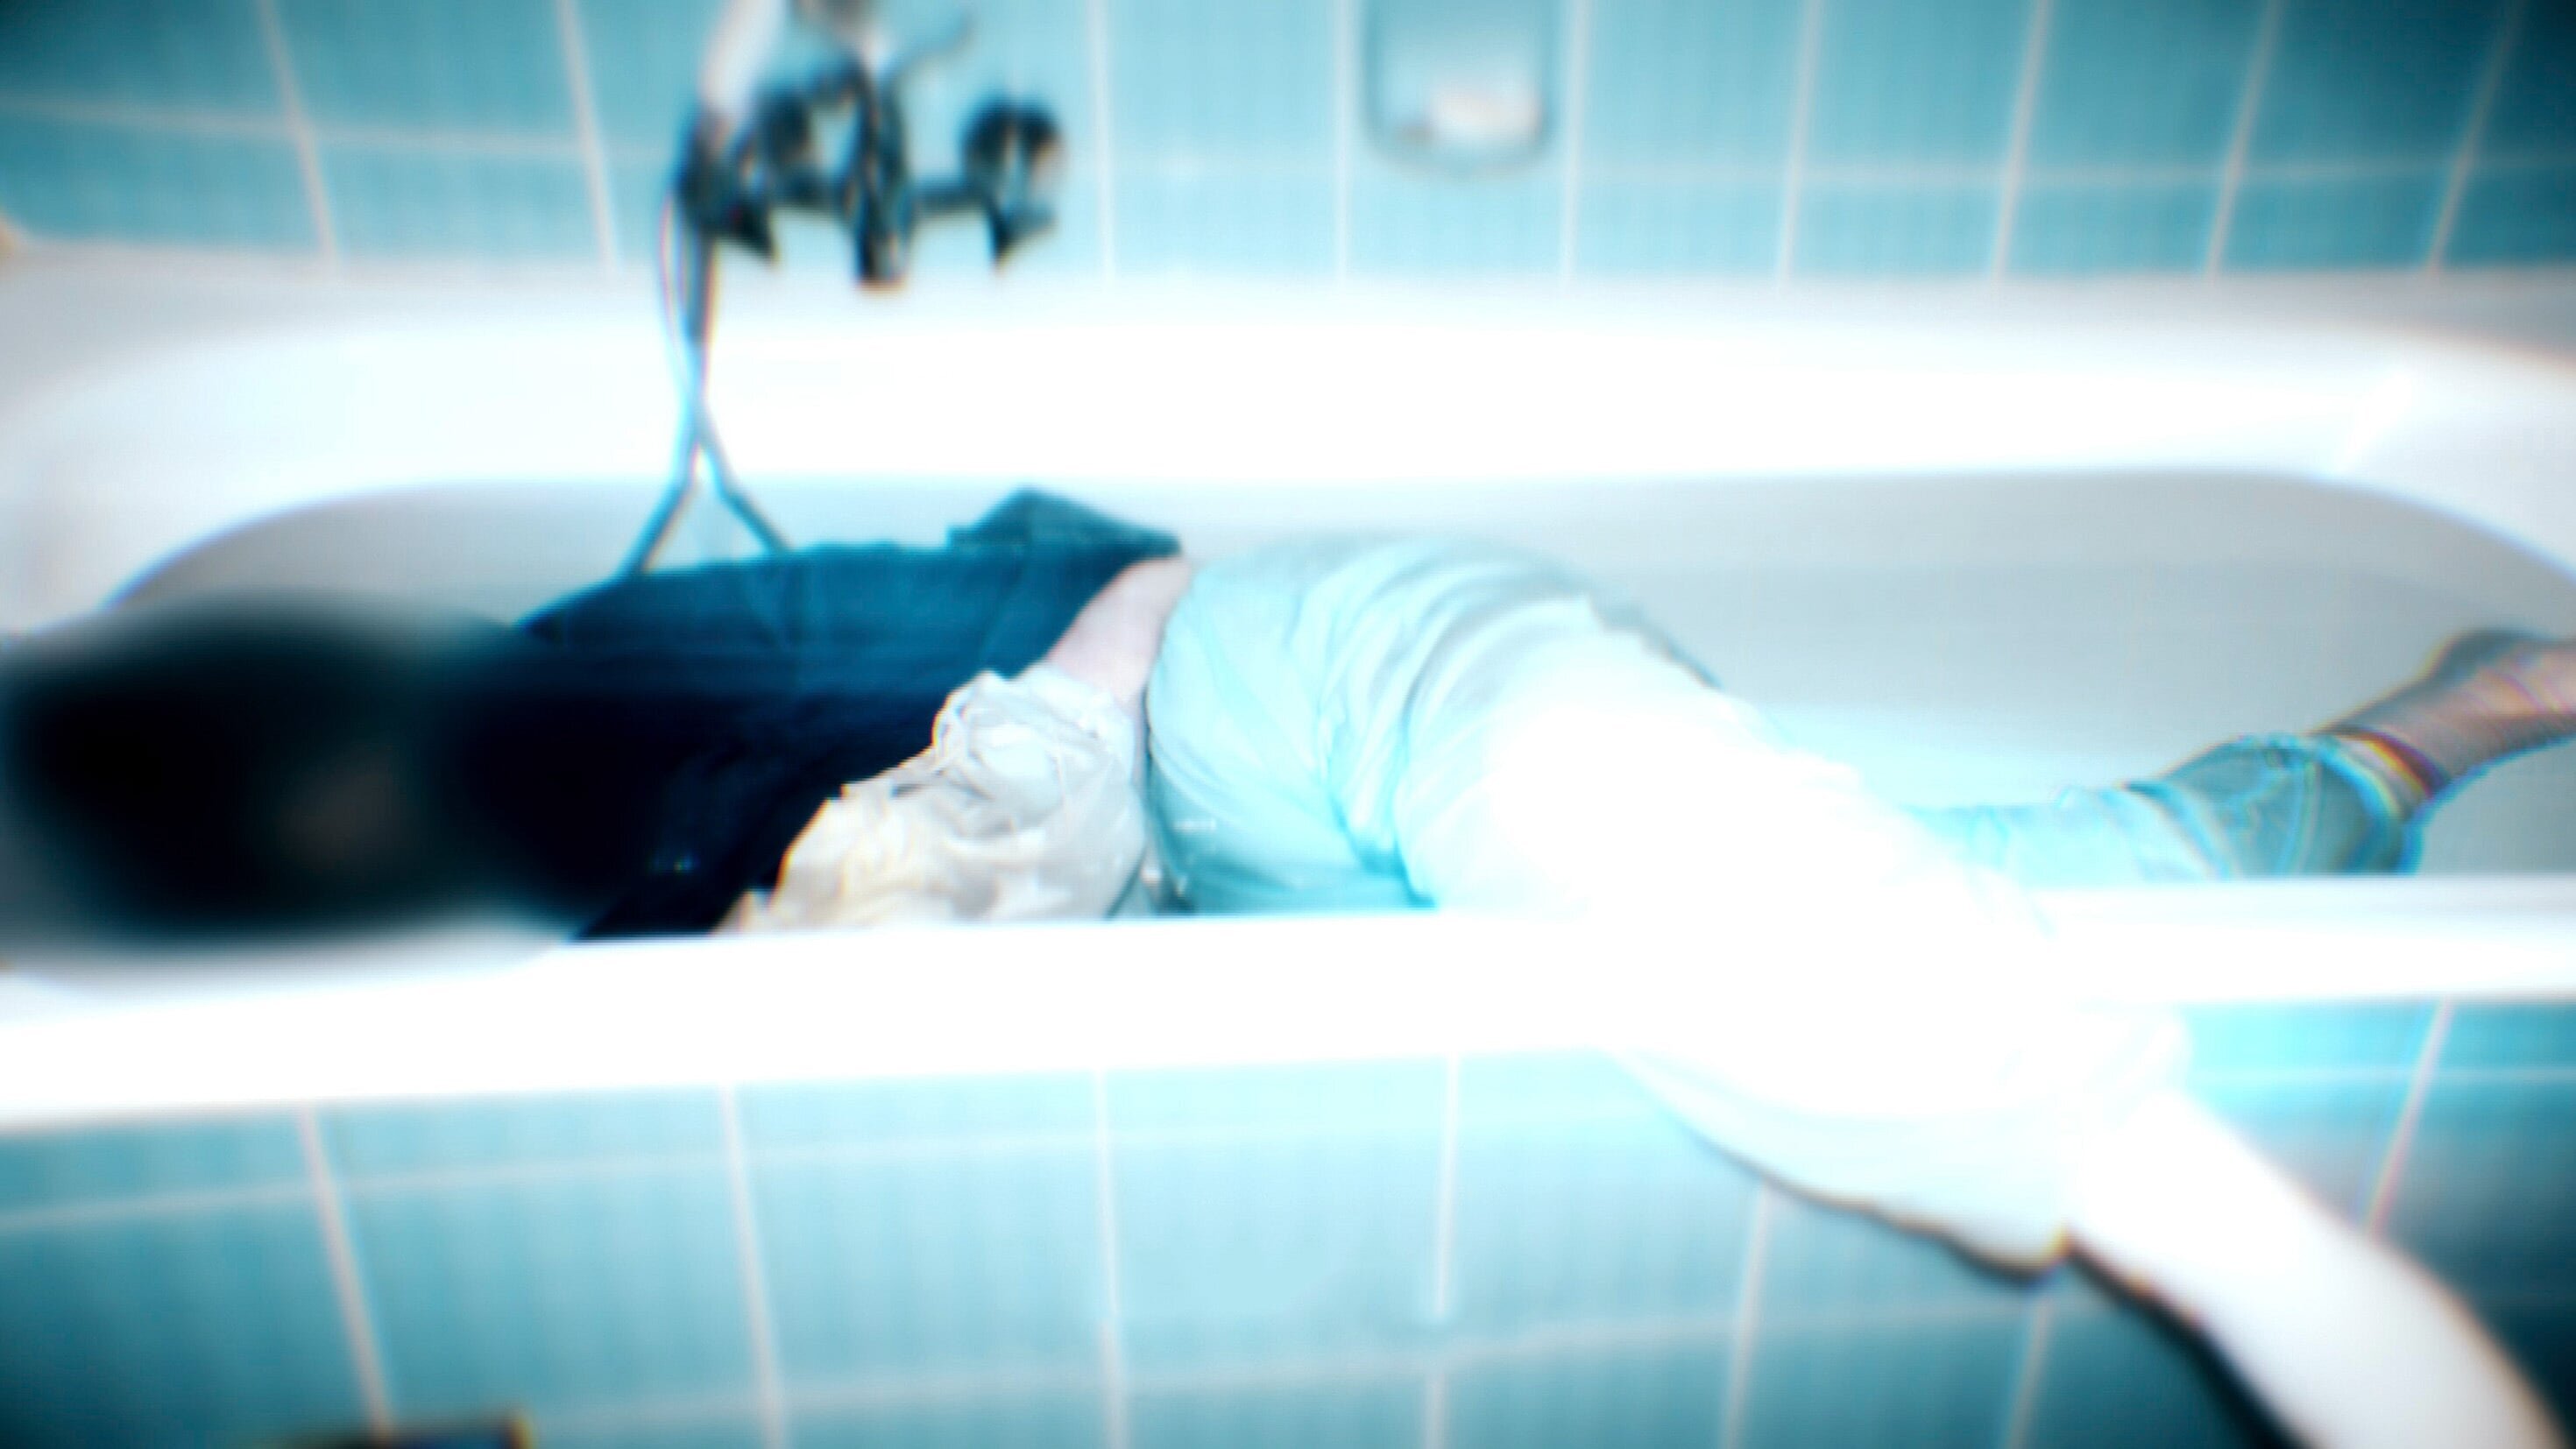 Tod in der Badewanne